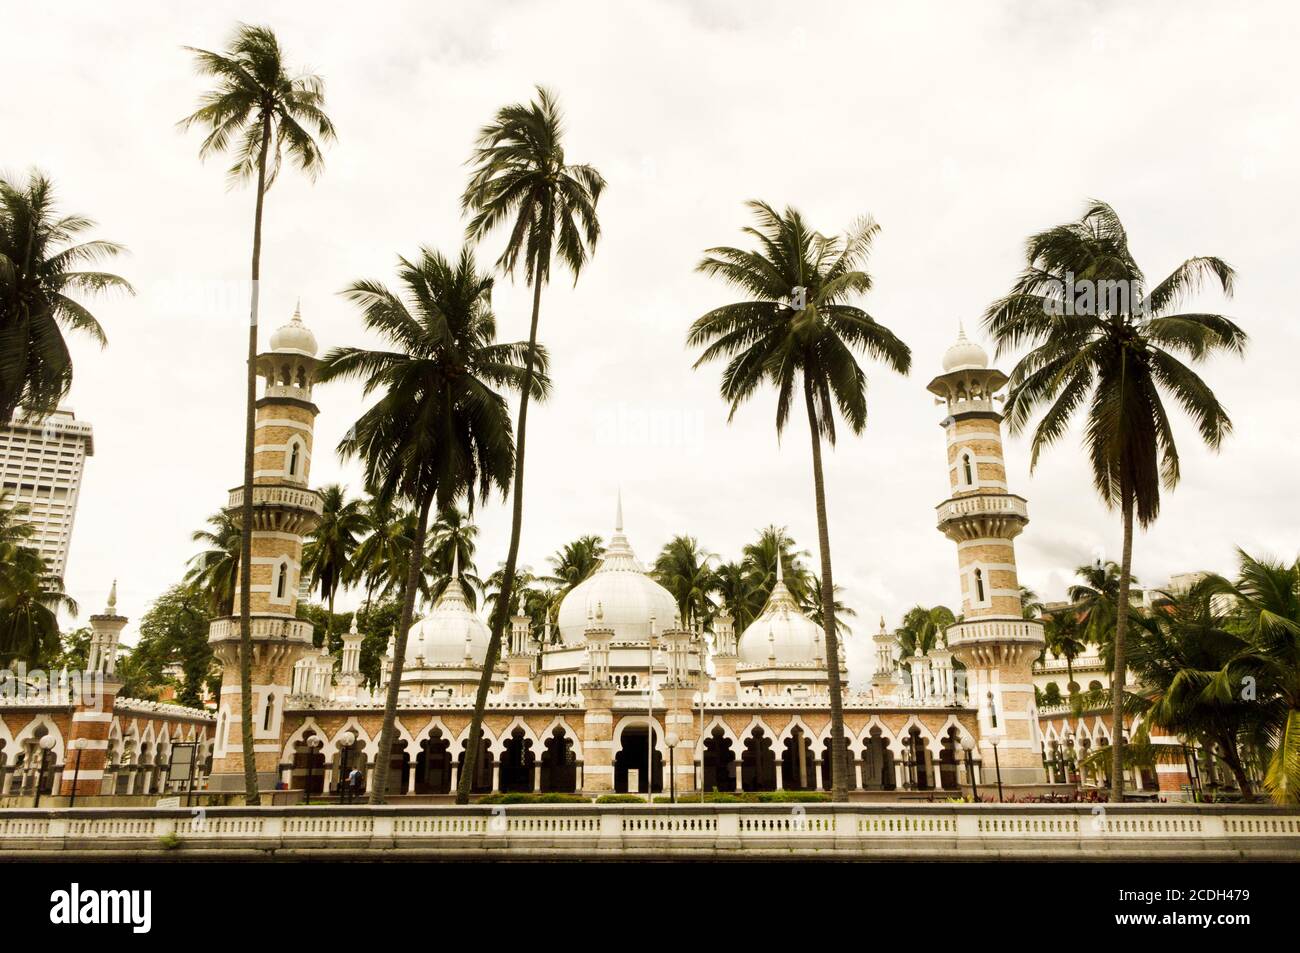 masjid jamek, mosque in kuala lumpur, malaysia. Stock Photo